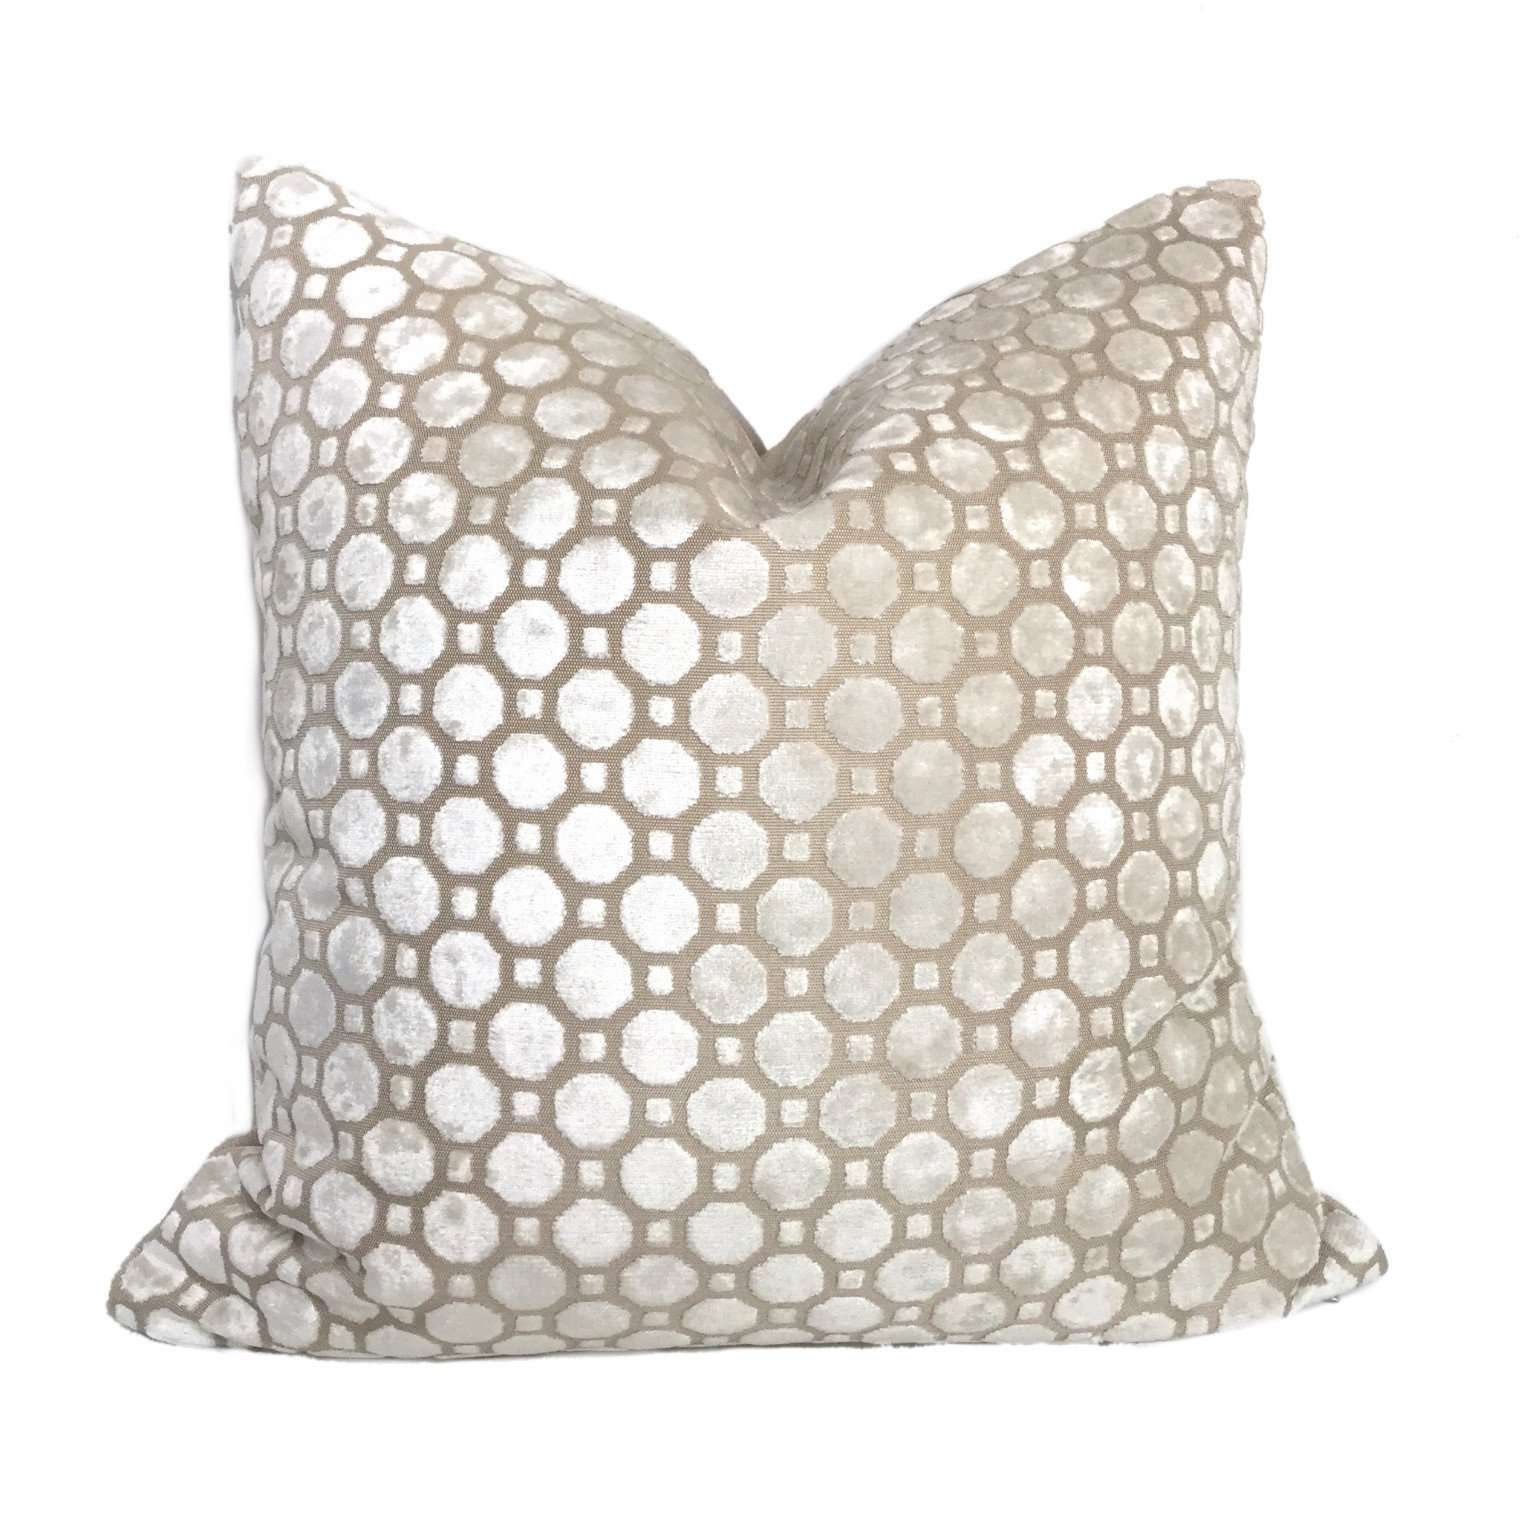 Robert Allen Velvet Geo Pearl White Pillow Cushion Cover Cushion Pillow Case Euro Sham 16x16 18x18 20x20 22x22 24x24 26x26 28x28 Lumbar Pillow 12x18 12x20 12x24 14x20 16x26 by Aloriam